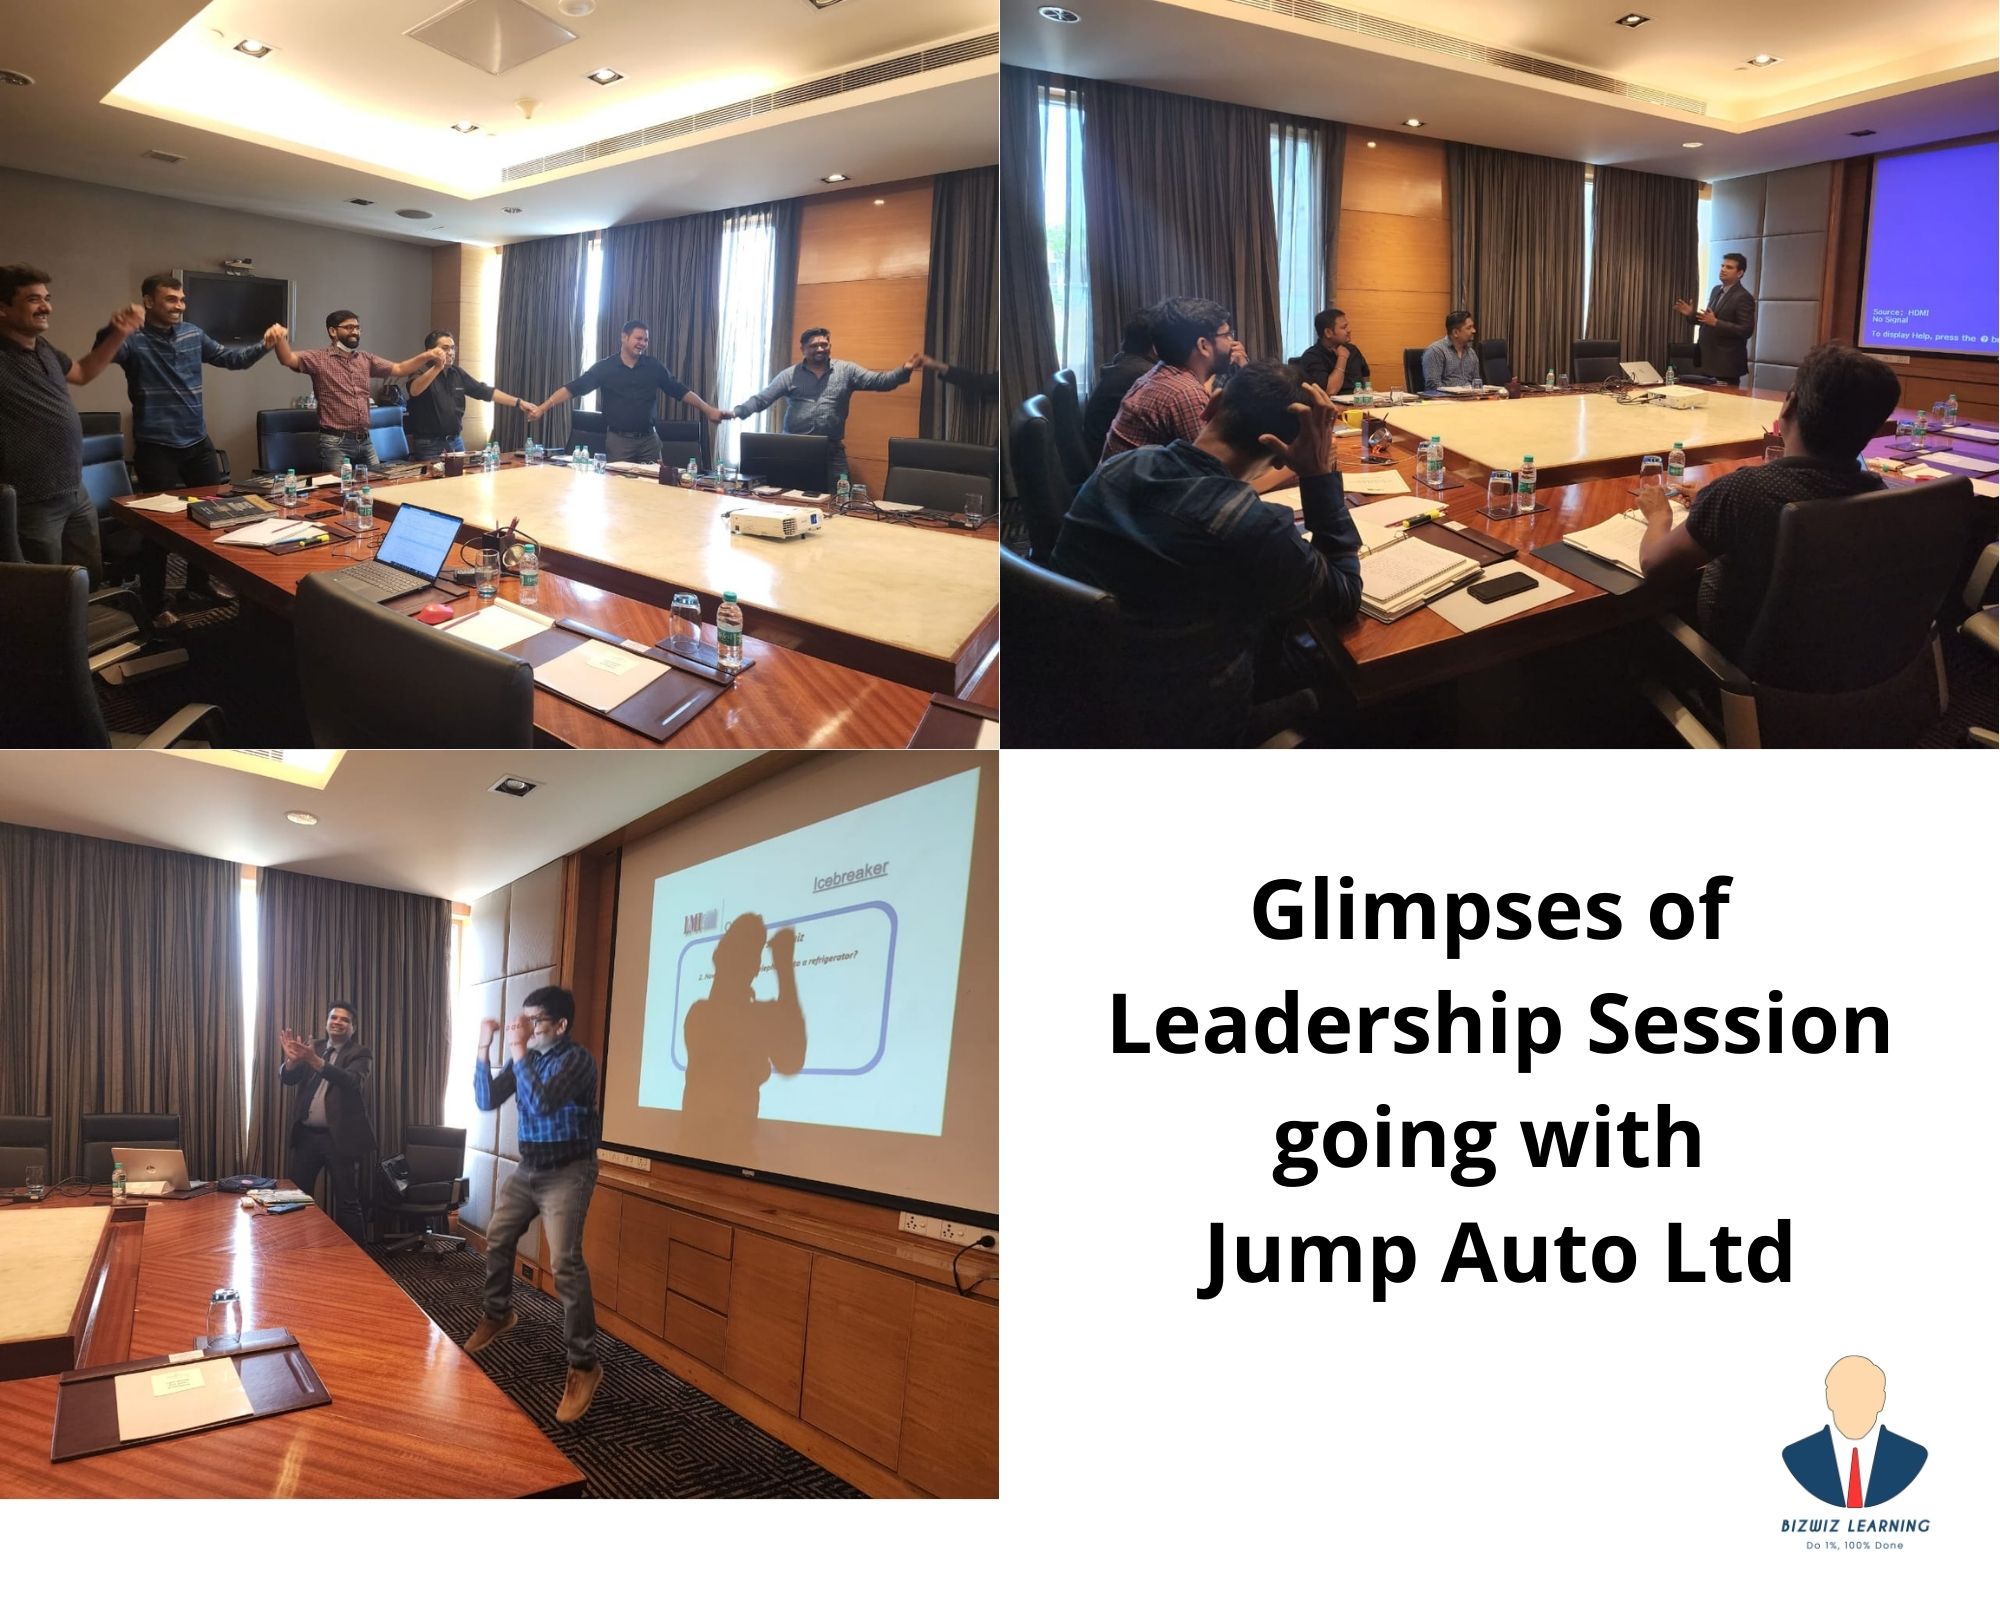 Leadership Session at Jump Auto Ltd